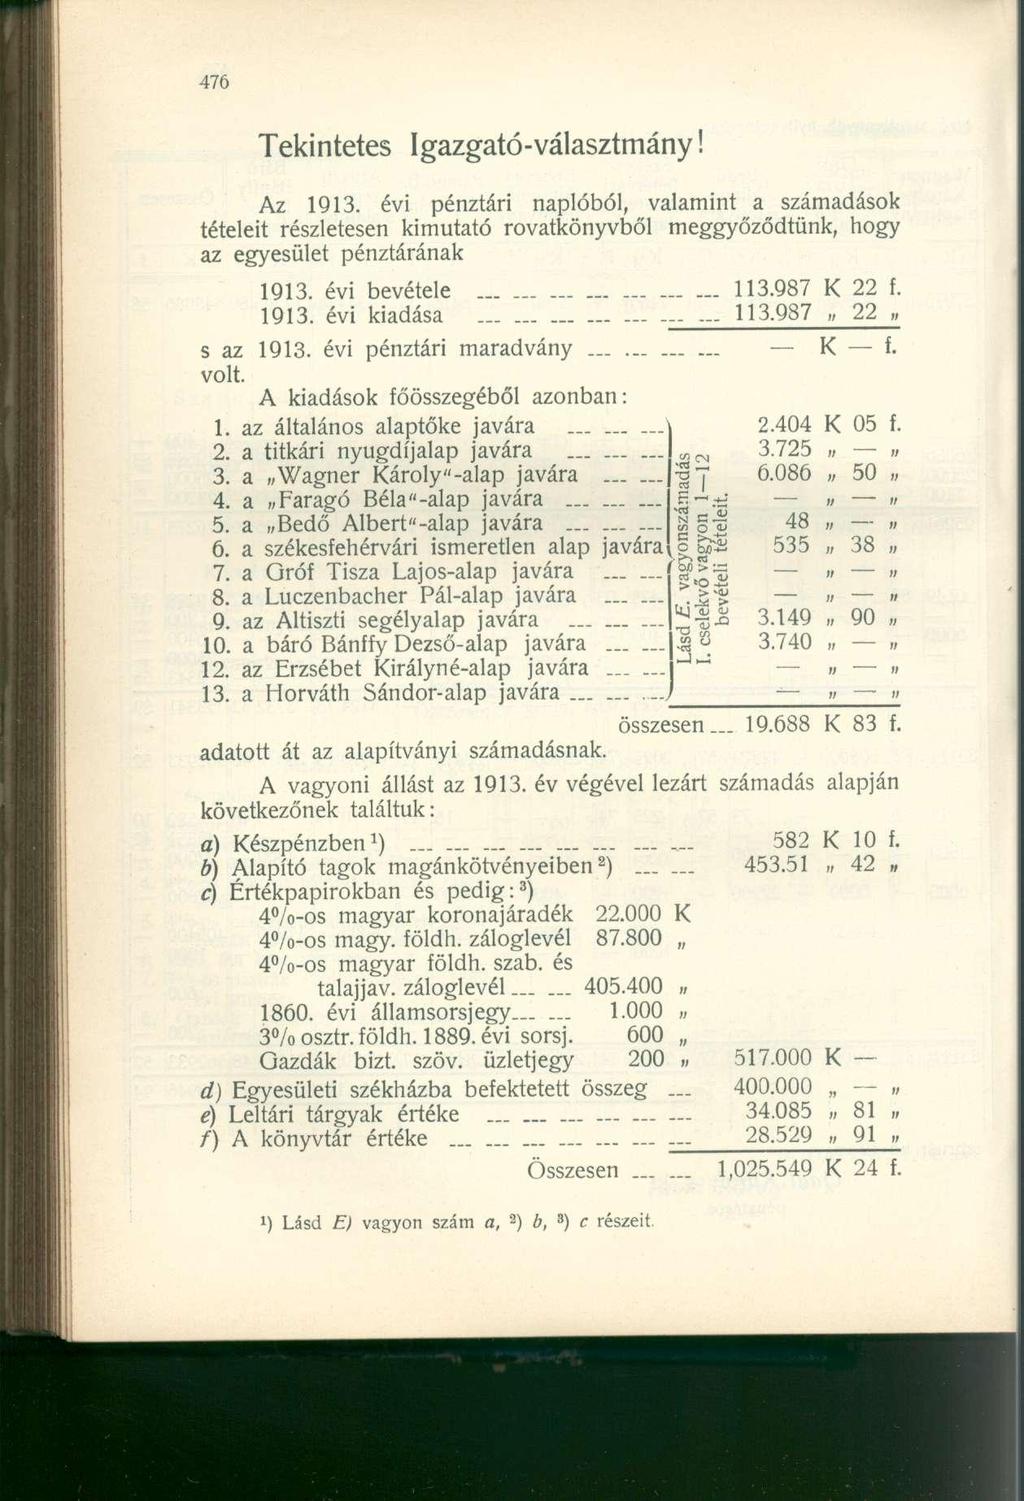 Tekintetes Igazgató-választmány! Az 1913. évi pénztári naplóból, valamint a számadások tételeit részletesen kimutató rovatkönyvből meggyőződtünk, hogy az egyesület pénztárának 1913. évi bevétele 113.